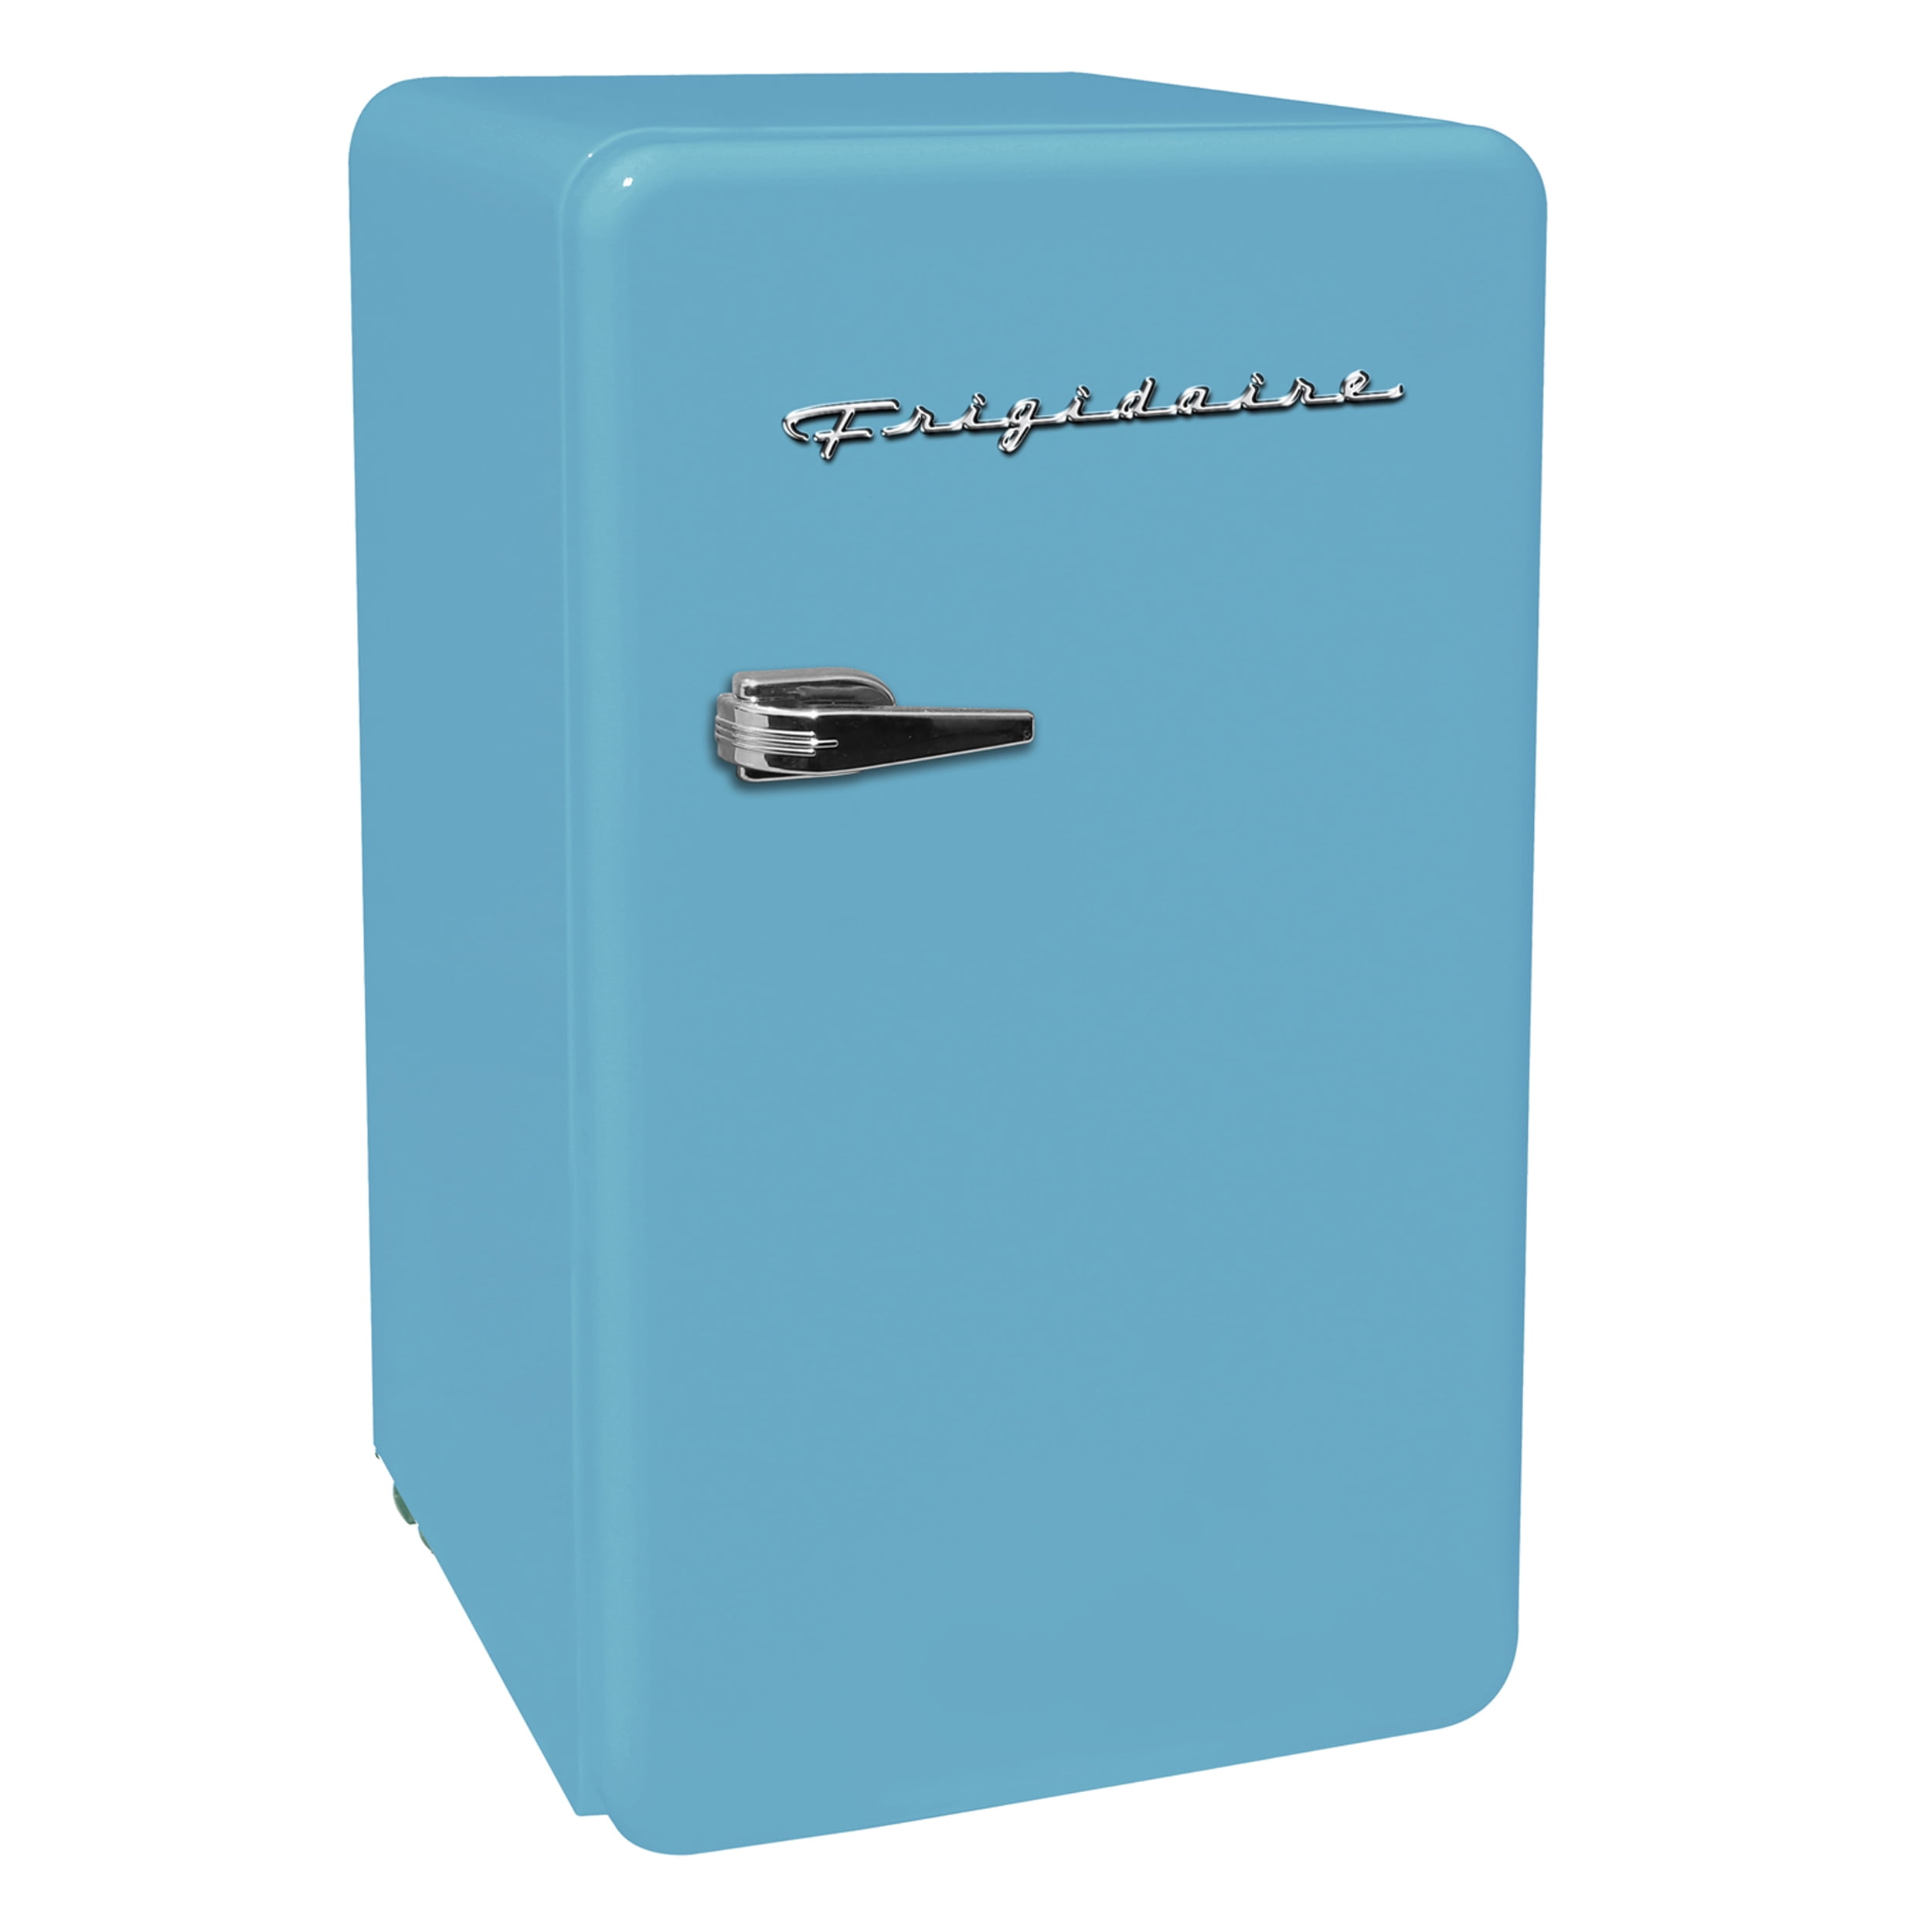 Frigidaire 3 2 Cu Ft Single Door Retro Compact Refrigerator Efr372 Blue Walmart Com Walmart Com